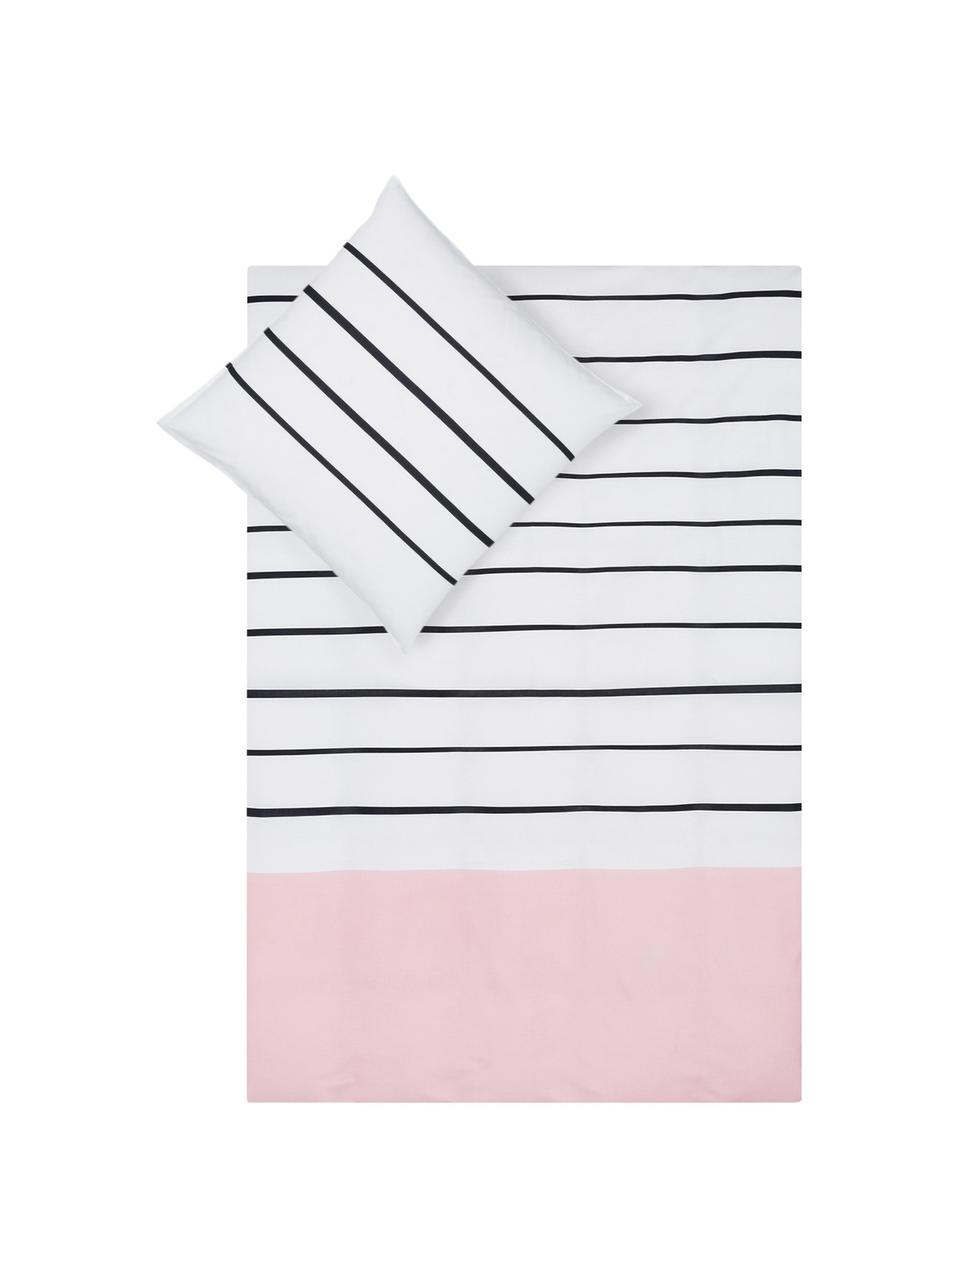 Gestreifte Baumwoll-Bettwäsche Blush mit rosa Kontrast, Webart: Renforcé Fadendichte 150 , Weiss, Rosa, Schwarz, 140 x 200 cm + 1 Kissen 80 x 80 cm